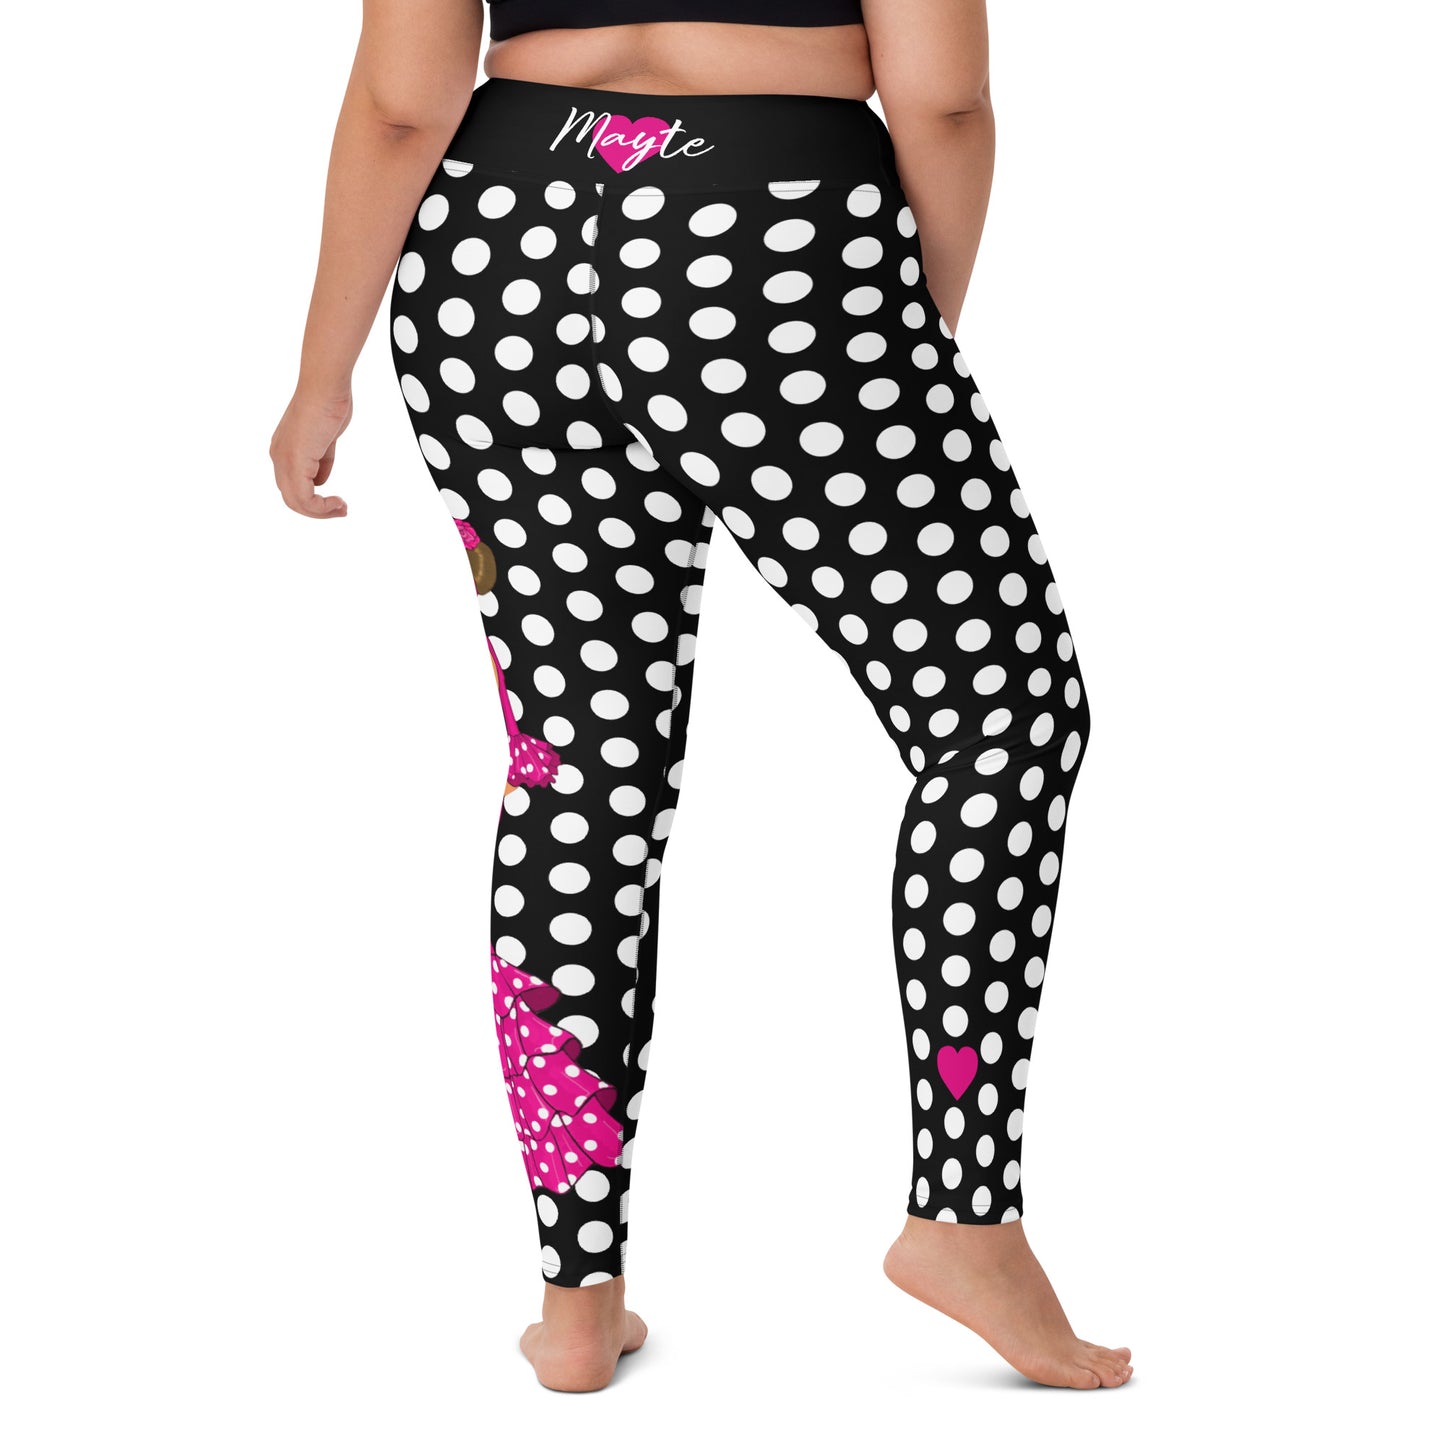 a woman wearing black and white polka dot print leggings